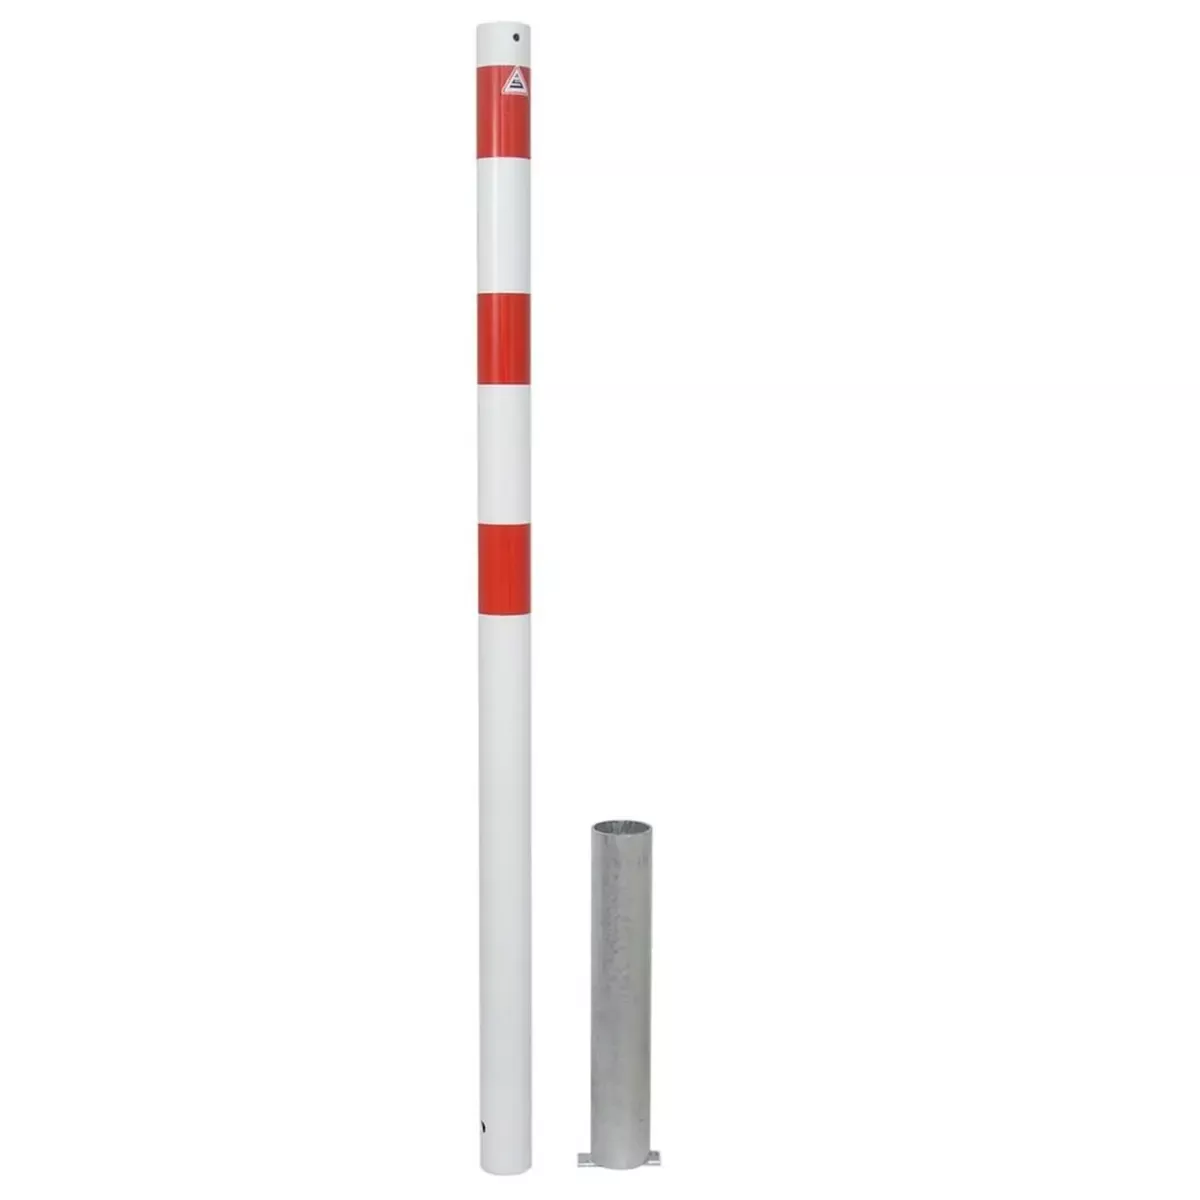 Absperrpfosten Stahlrohr Ø 60 x 2,5 mm ohne Öse, herausnehmbar ohne Verschluss, weiß-rot (inkl. Bodenhülse)